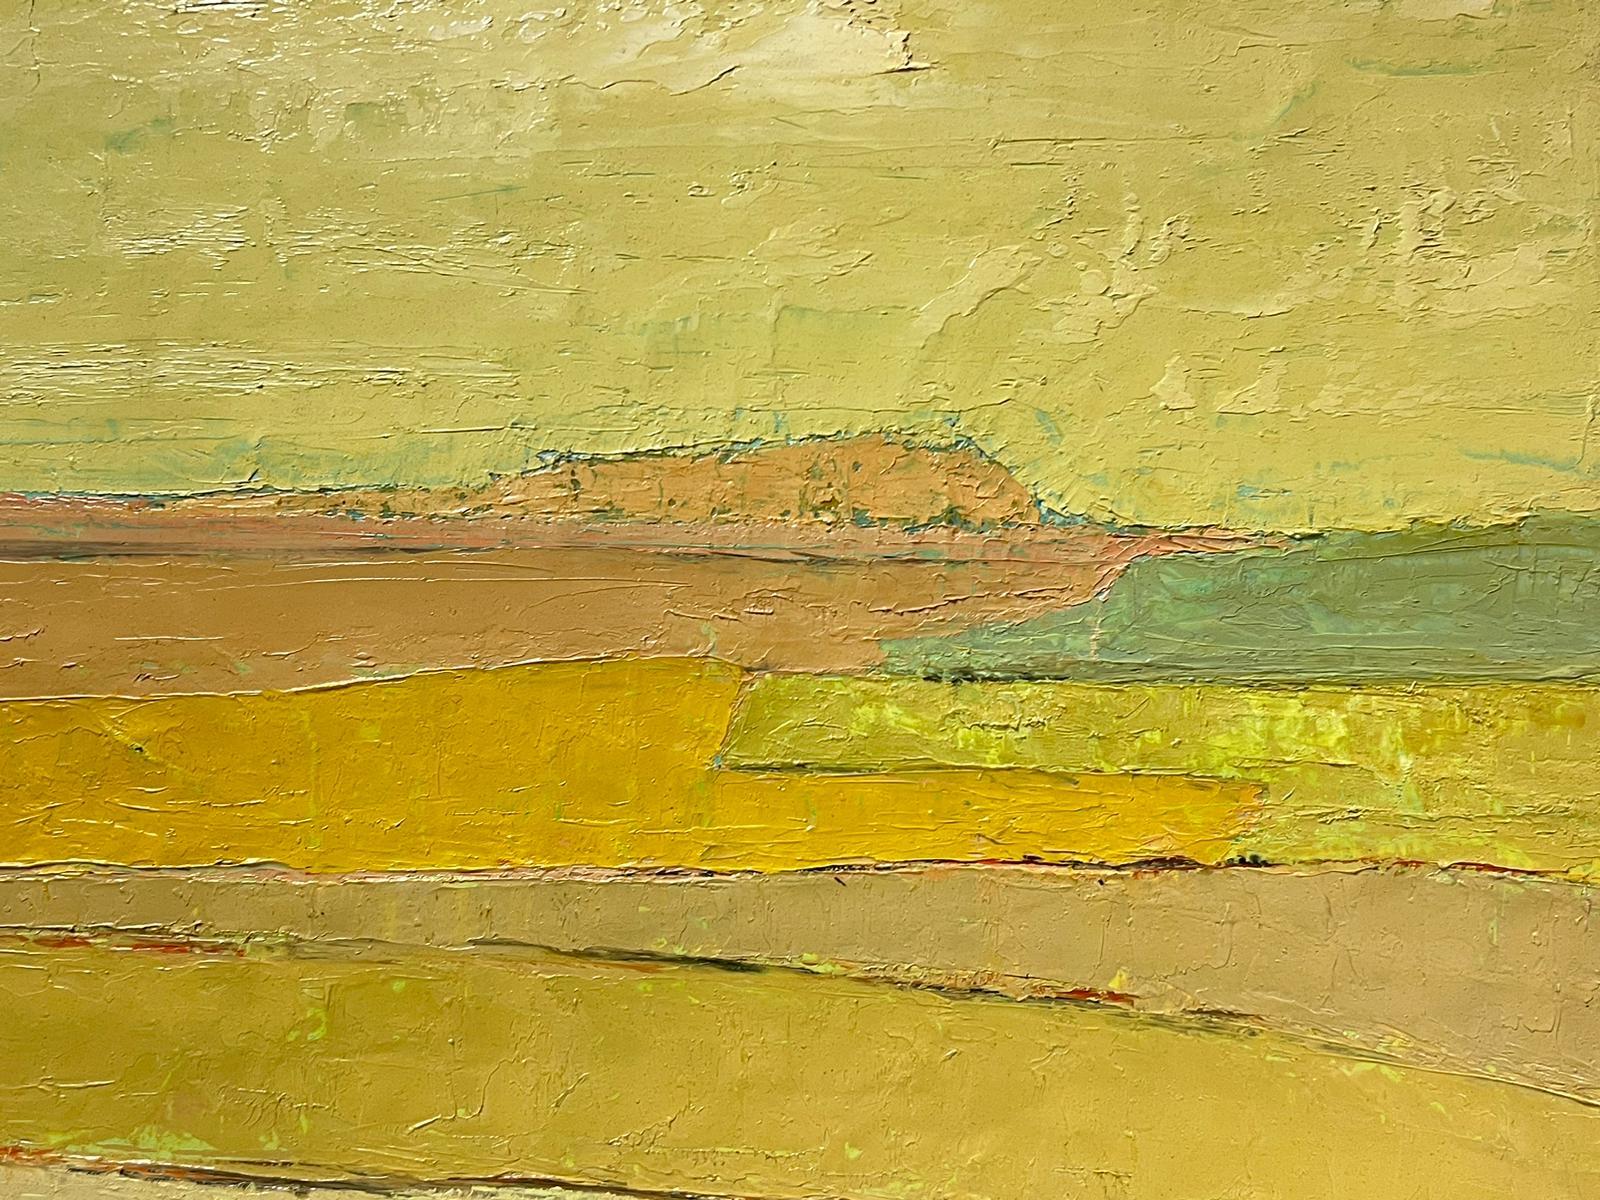 Gelbe Landschaft
unterzeichnet von Lucien Gondret (Französisch 1941-2023)
signiertes Öl auf Leinwand, ungerahmt
Leinwand: 18 x 24 Zoll
Herkunft: Nachlass des Künstlers, Frankreich
Zustand: sehr guter und gesunder Zustand